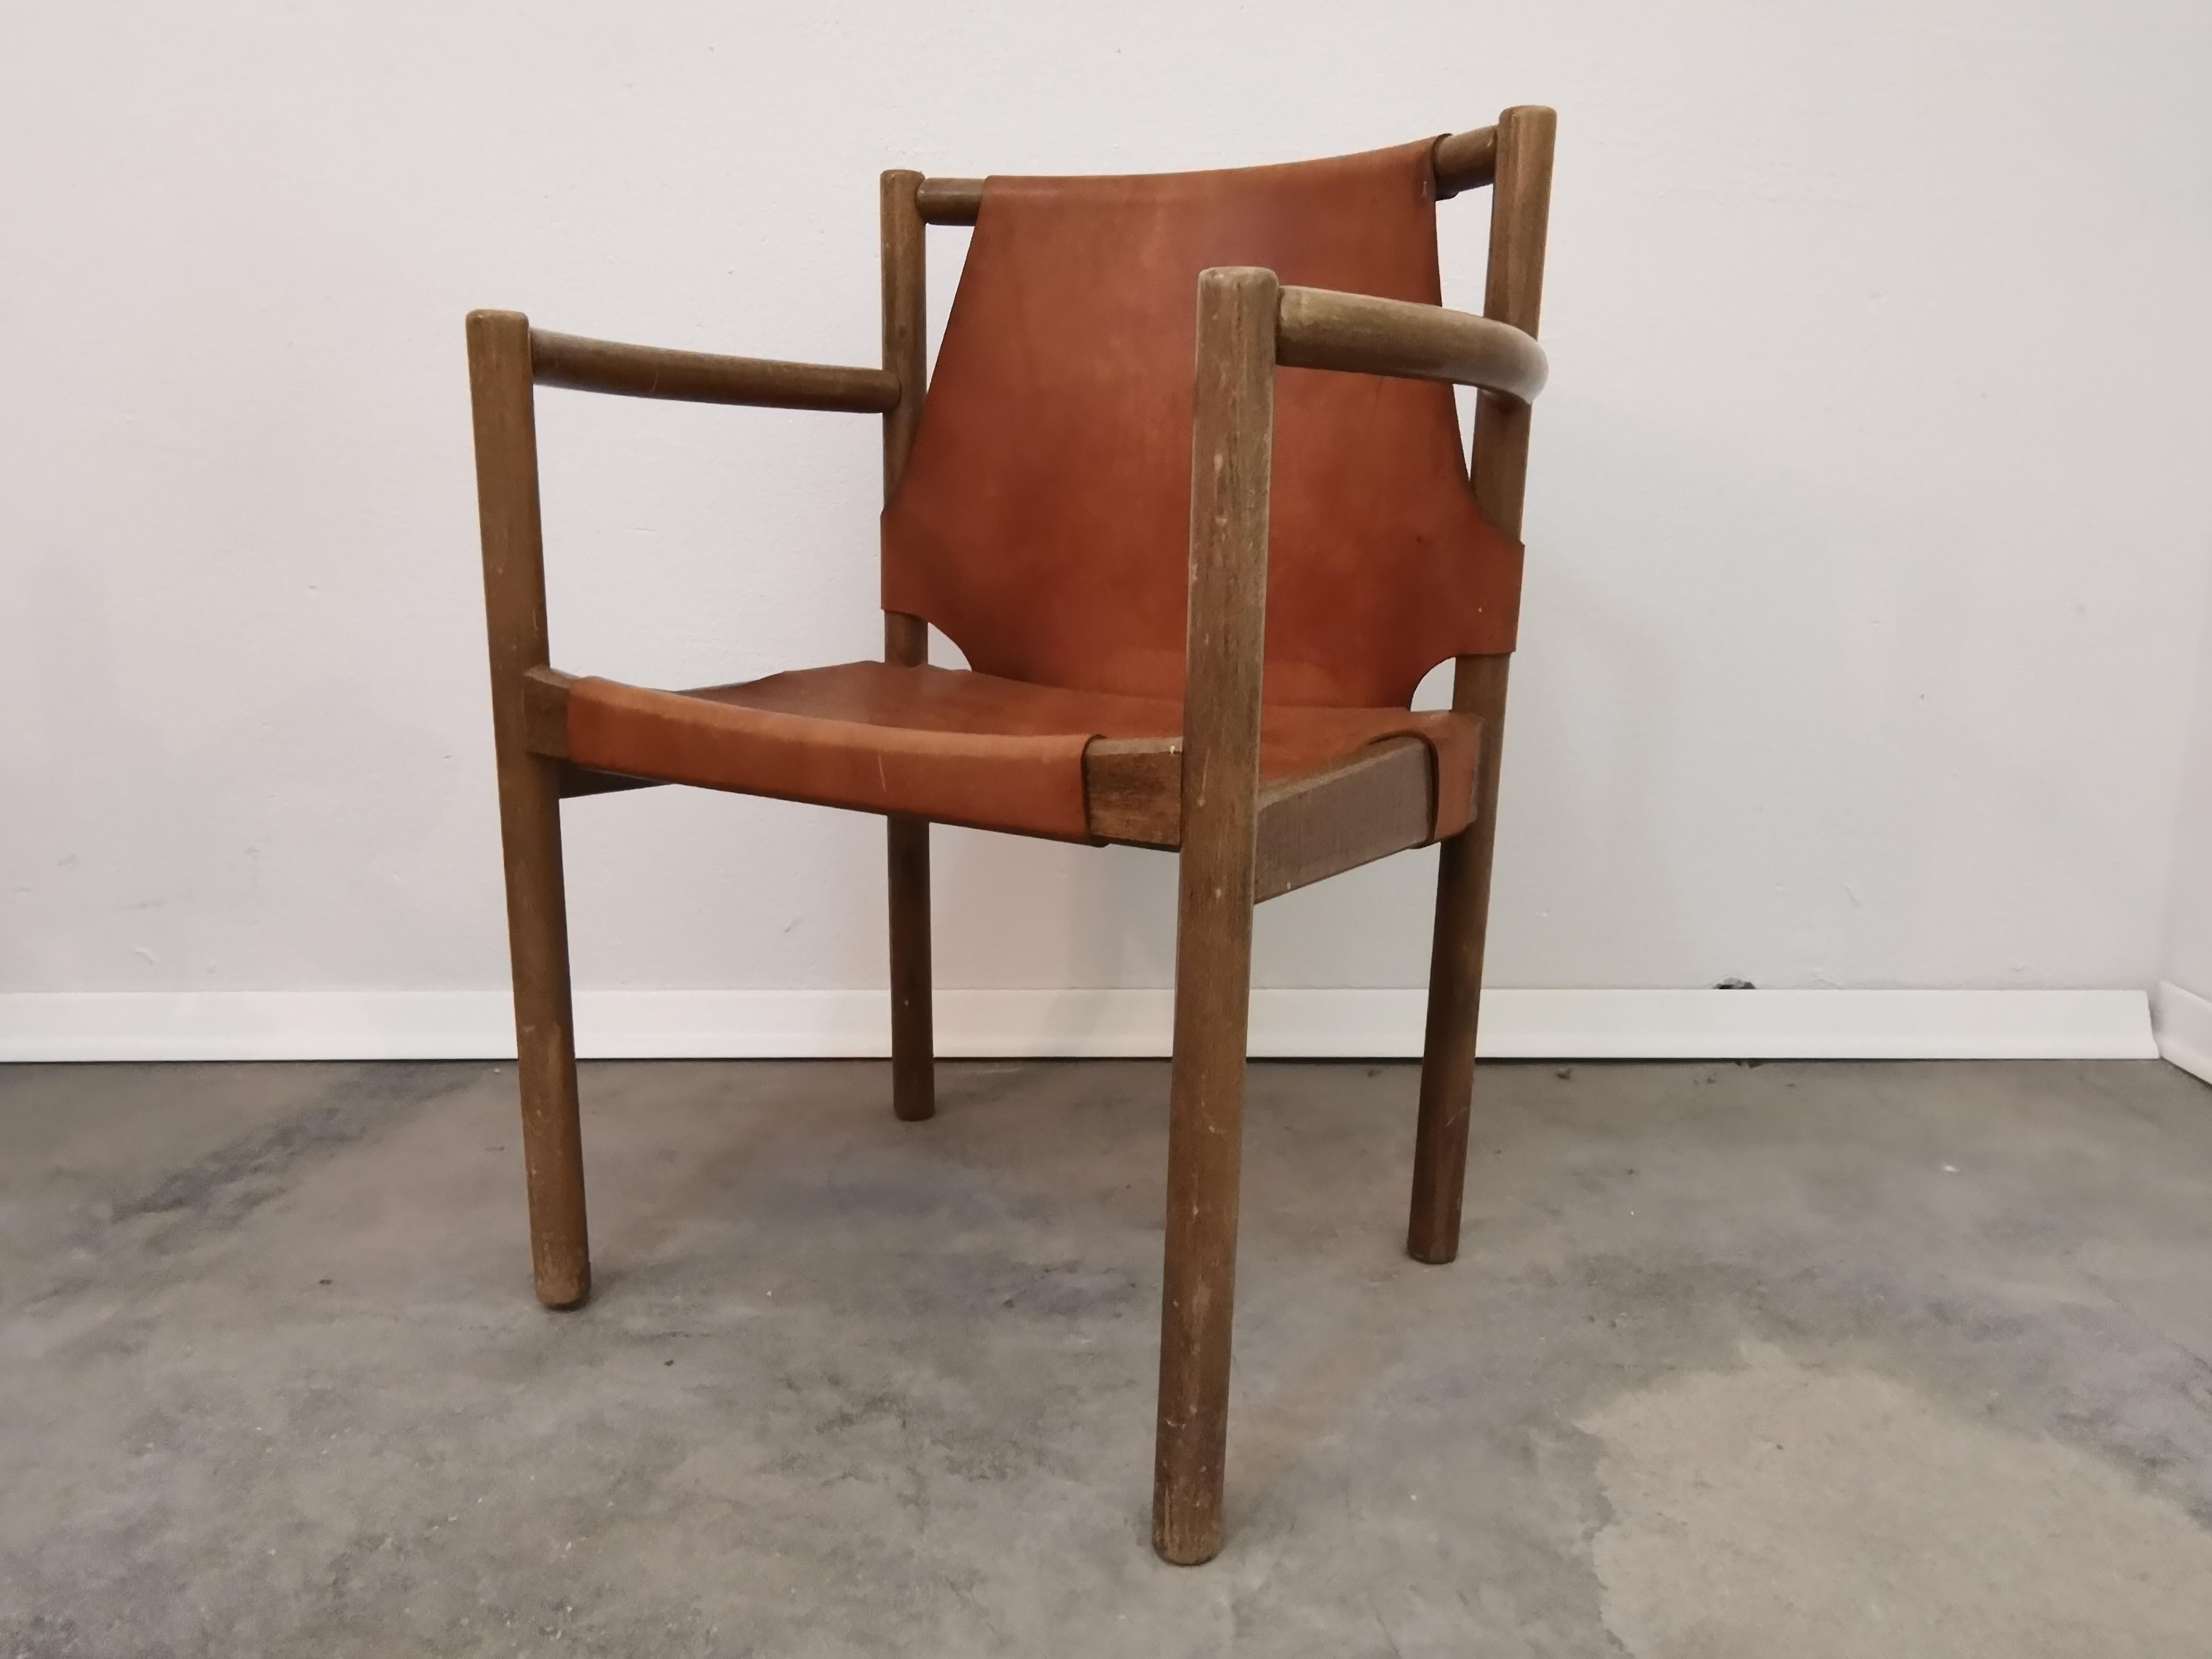 Vieille chaise avec siège en cuir
Période de production : 1960s
Style : vintage, design classique, moderne mi-séculaire
Matériaux : bois, cuir
Couleur : brun.